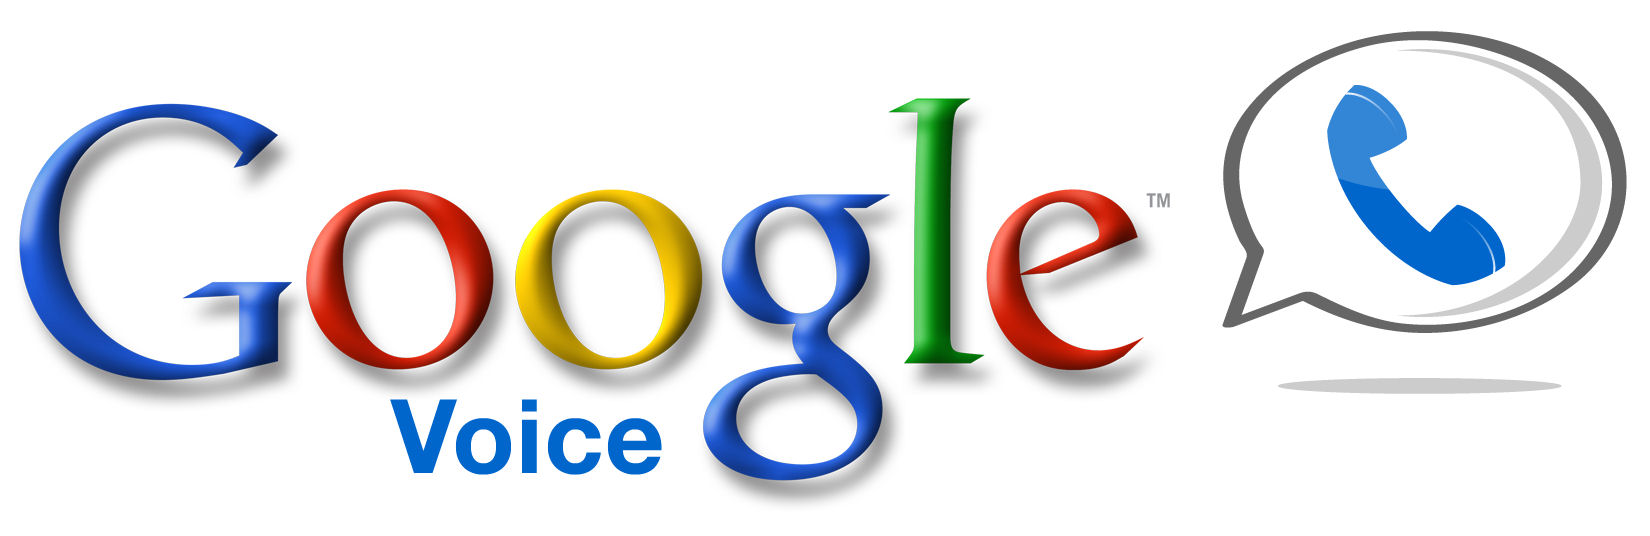 Google is Google Voice aan het testen in Europa